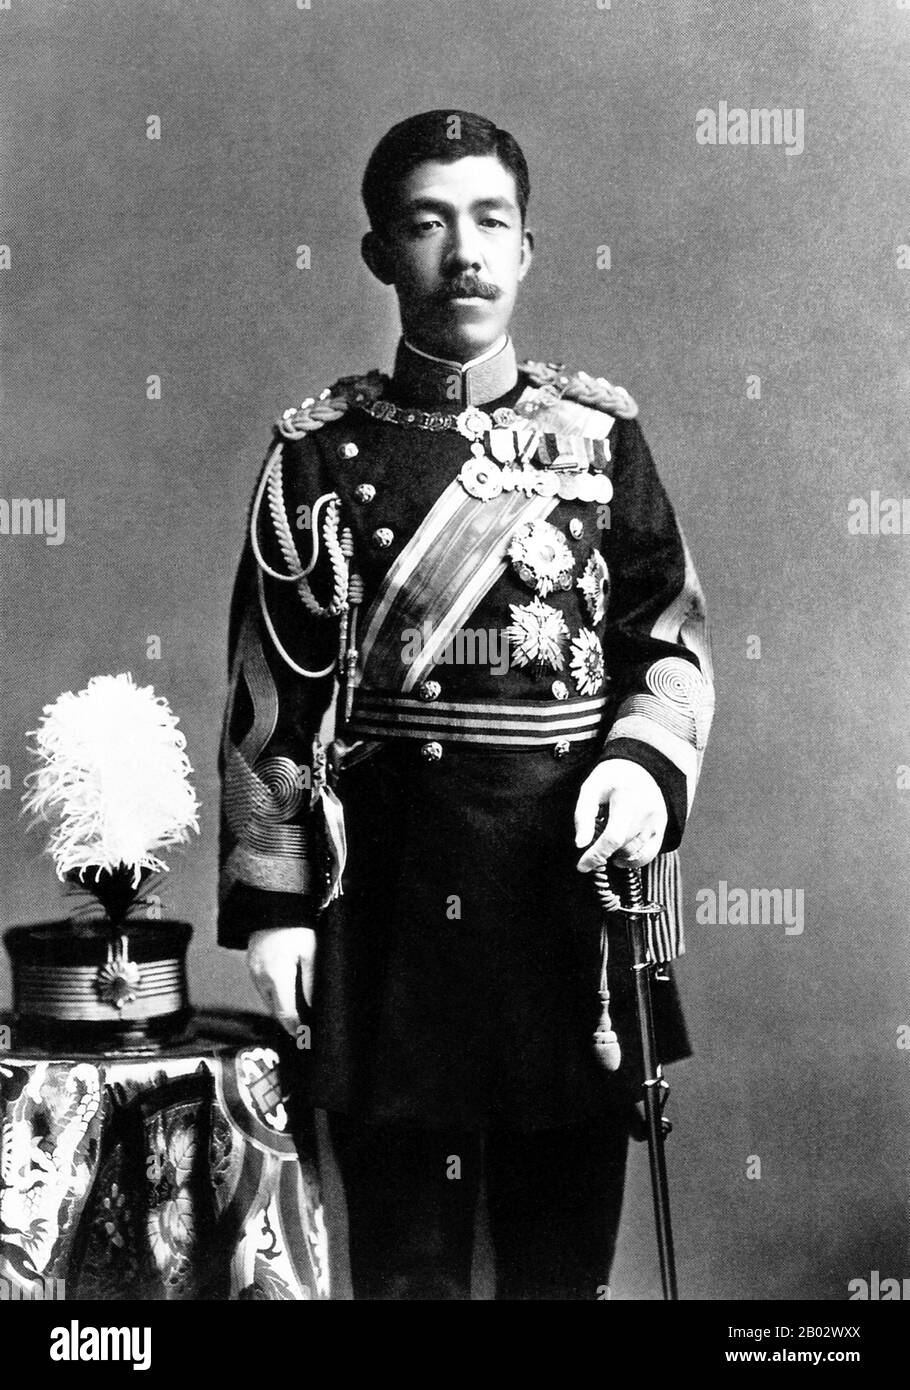 L'empereur Taishō (Taisho-tenno, 31 août 1879 – 25 décembre 1926) était le 123ème empereur du Japon, selon l'ordre traditionnel de succession, régnant à partir du 30 juillet 1912, jusqu'à sa mort en 1926. Le nom personnel de l’empereur était Yoshiito. Selon la coutume japonaise, pendant le règne, l'empereur est appelé l'empereur (présent). Après la mort, il est connu par un nom posthume qui, selon une pratique datant de 1912, est le nom de l'ère qui coïncide avec son règne. Ayant gouverné pendant la période de Taisho, il est bien connu sous le nom d'empereur Taisho. Banque D'Images